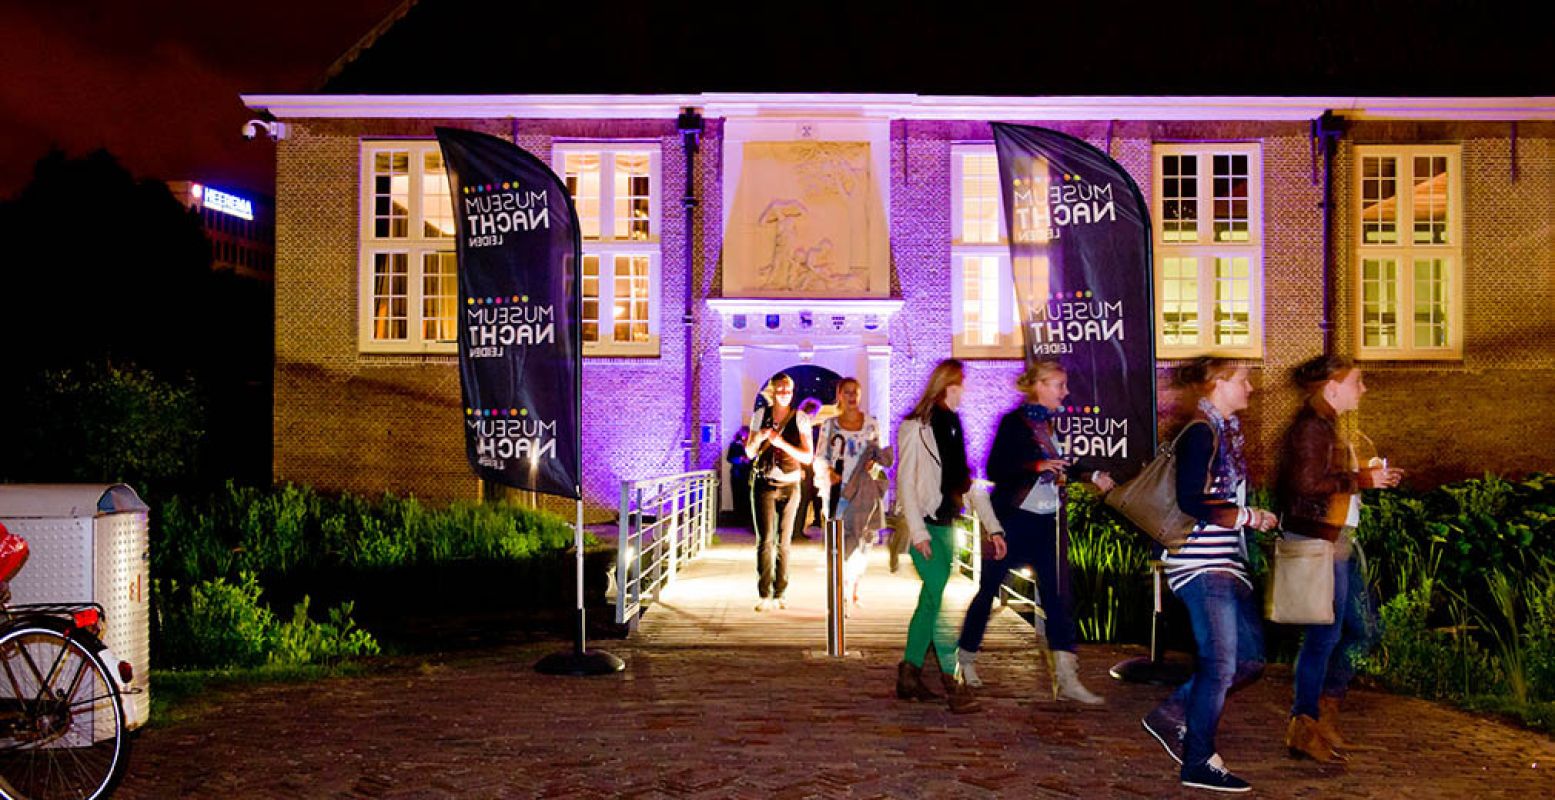 Ontdek musea tot diep in de nacht en doe mee aan leuke activiteiten. Foto: Museumnacht Leiden.